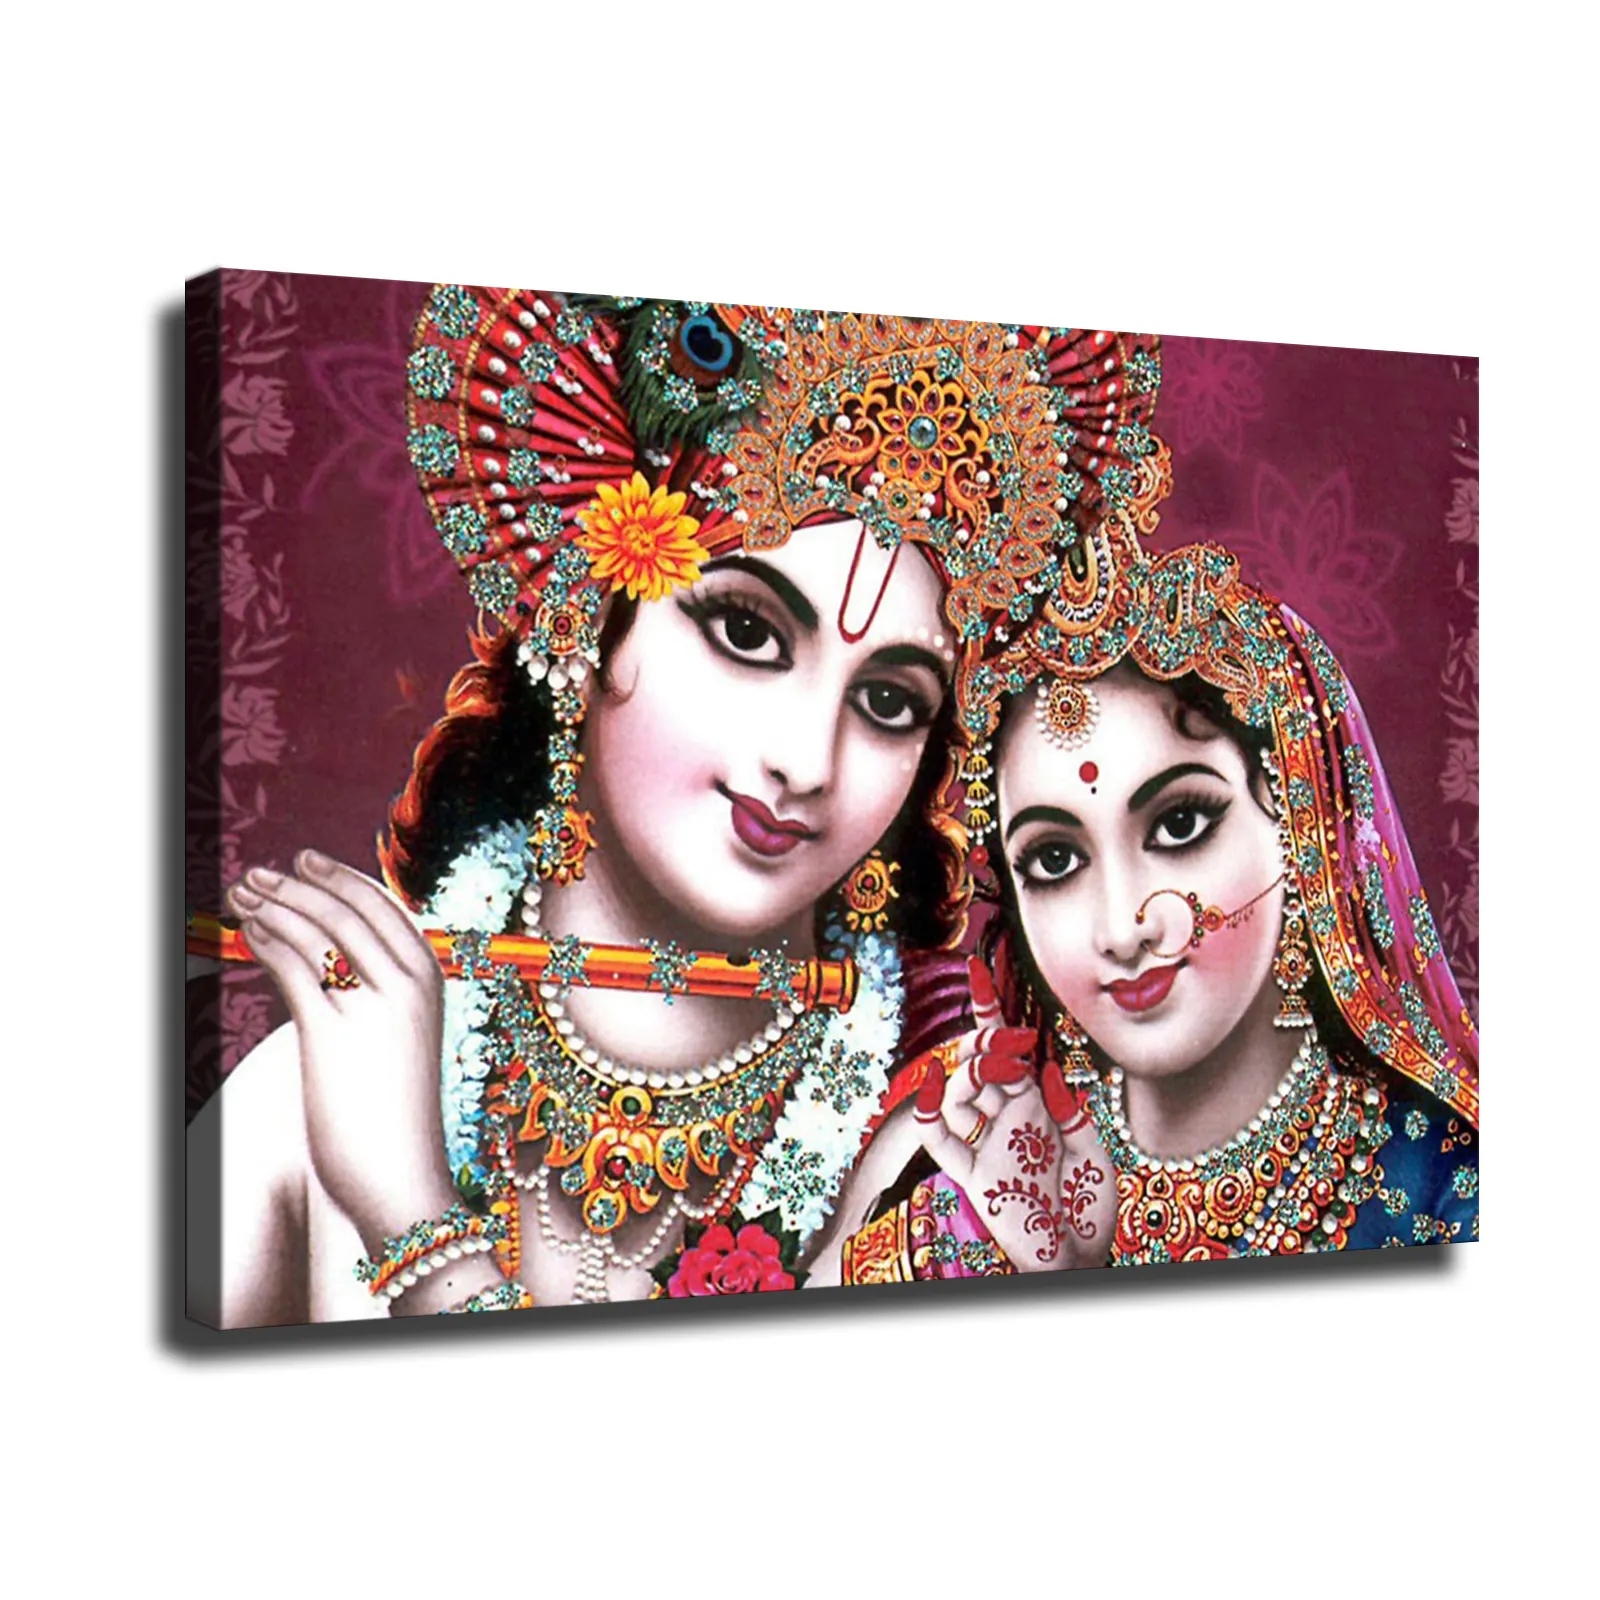 Póster de la India sobre lienzo hecho a mano, arte de la India, Dios, el señor étnico, Shiva